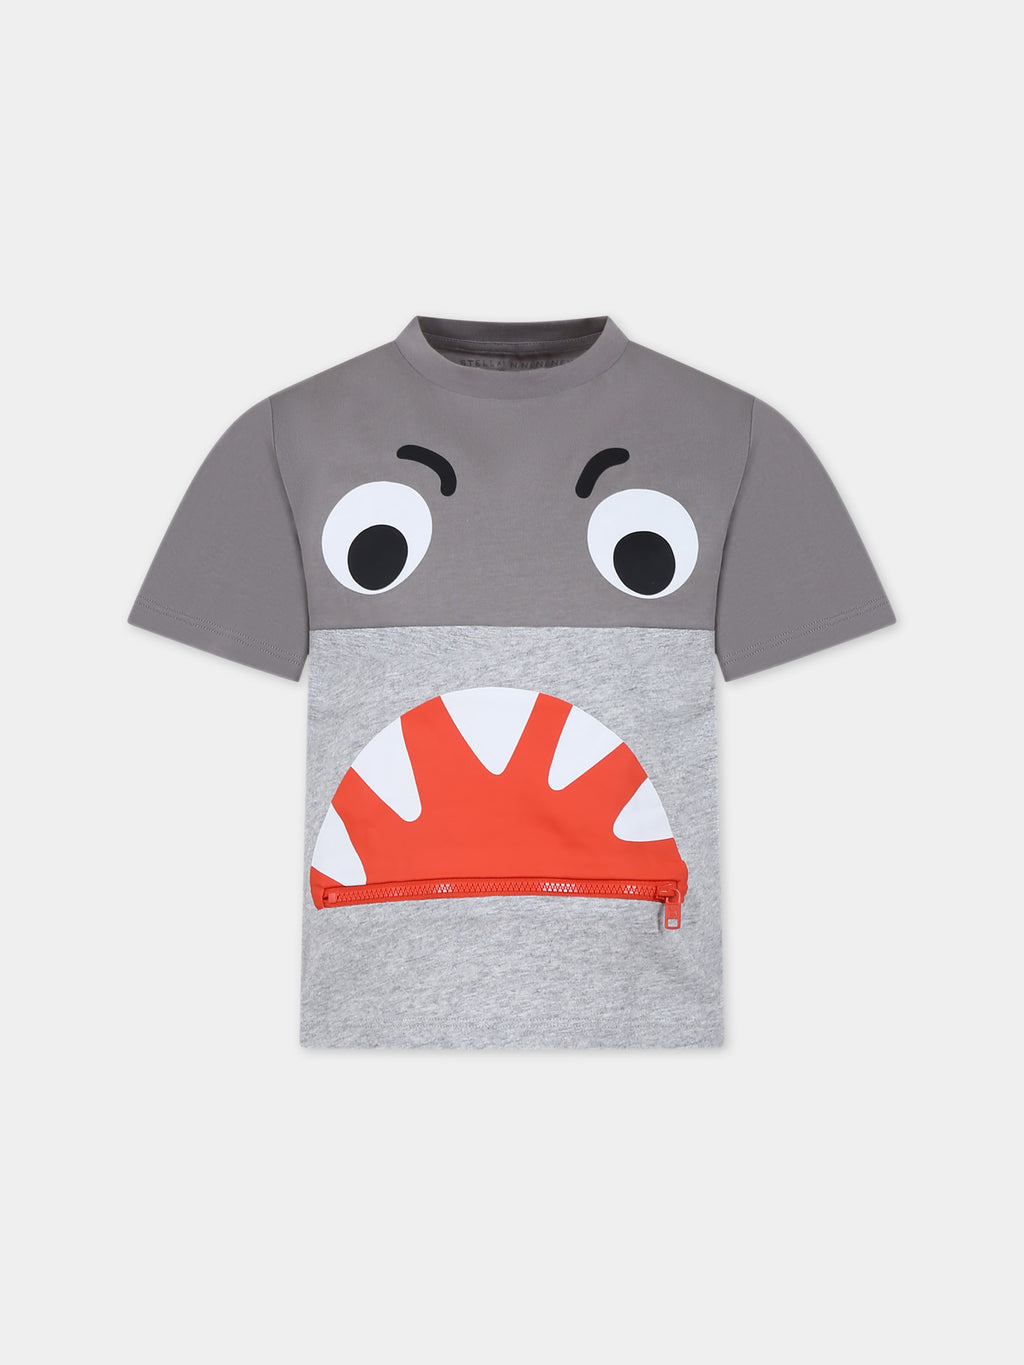 T-shirt grigia per bambino con squalo